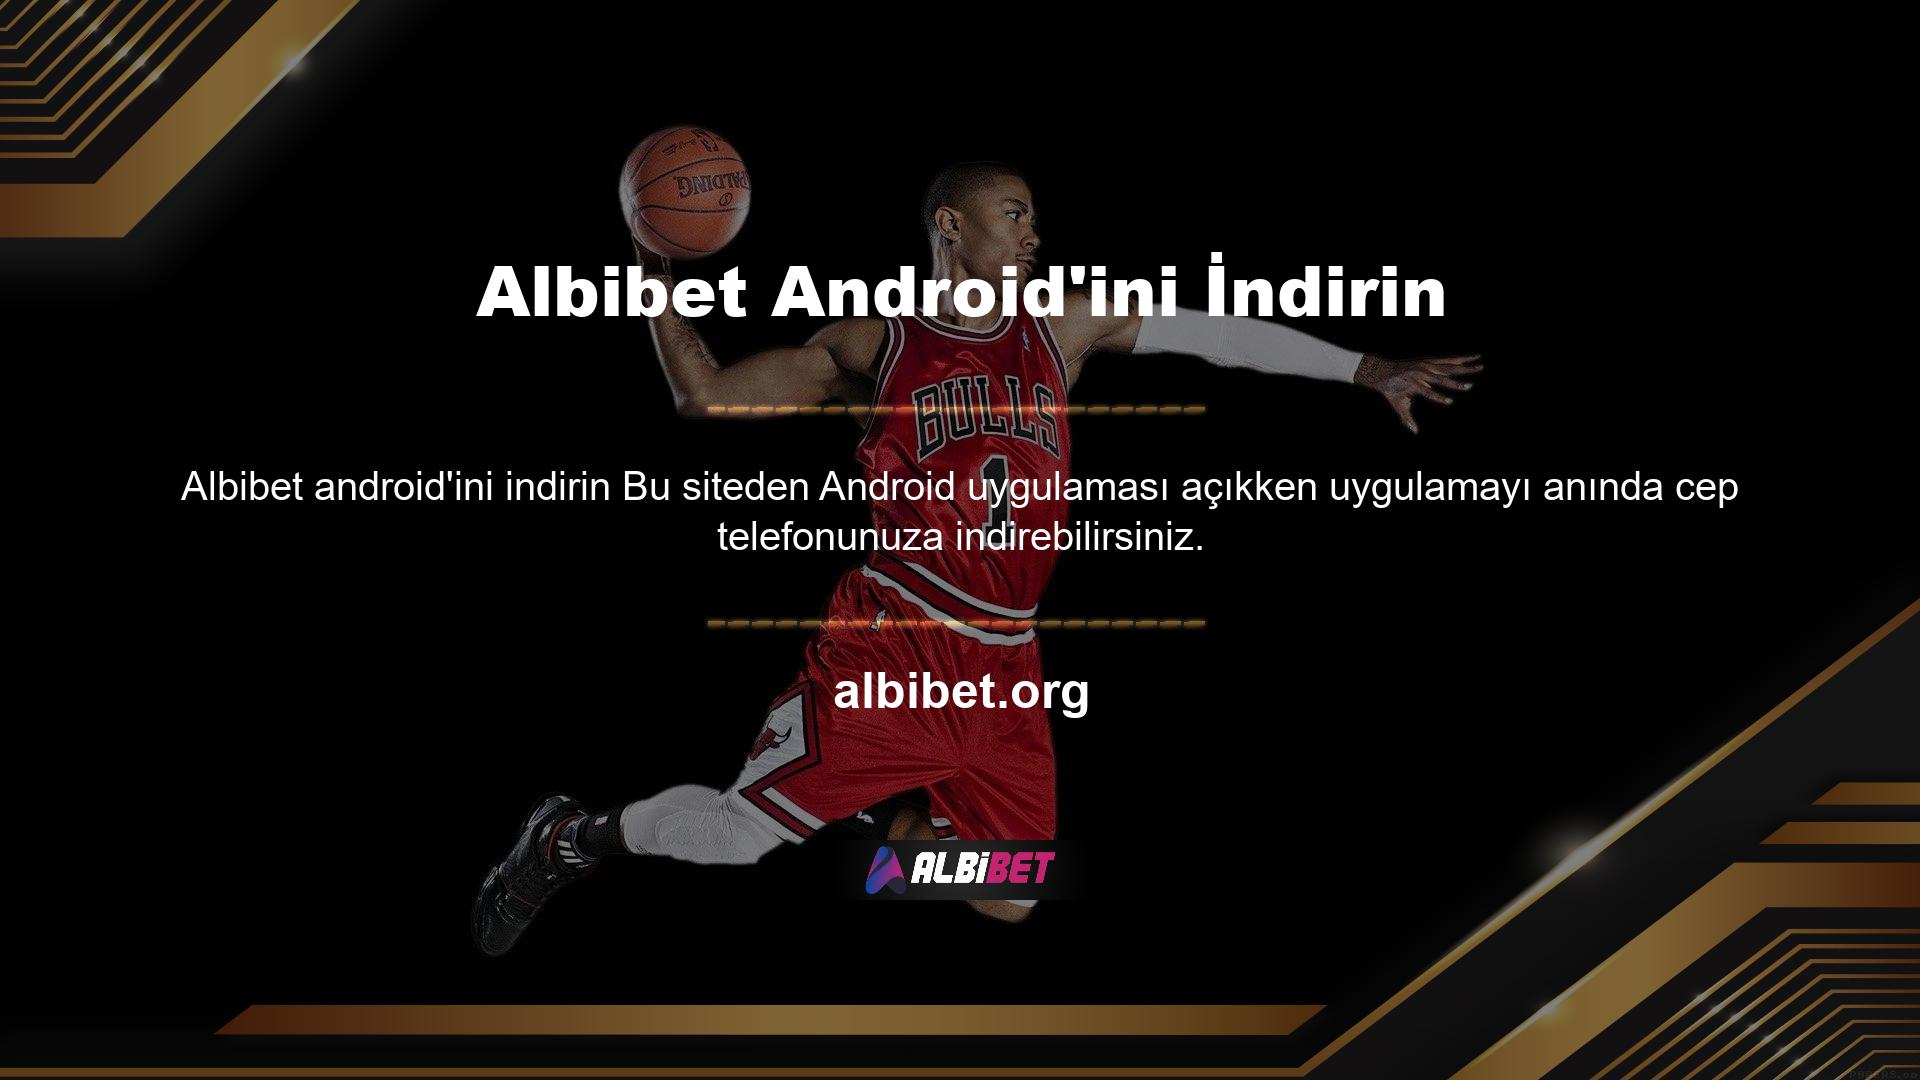 Sistem, iOS uygulaması gibi ücretsizdir ve Android uygulamasını destekleyen herhangi bir Albibet cep telefonundan indirilebilir